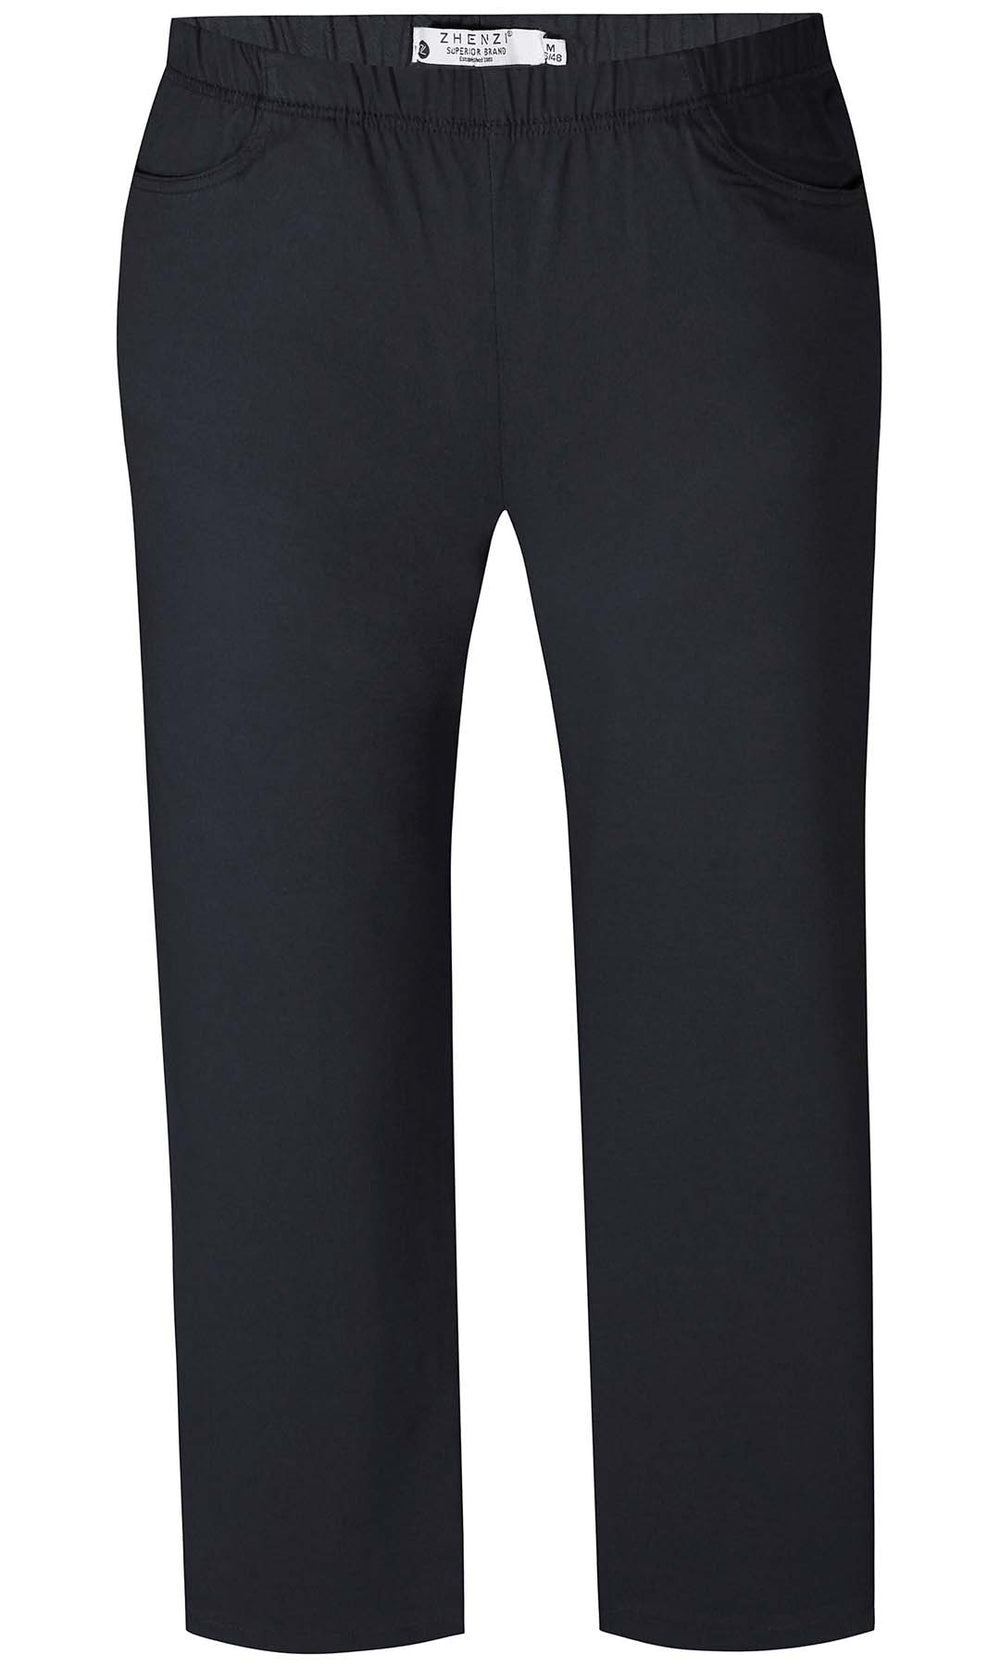 Jazzy 65 - Tidløse sorte bukser i Bengalin stof med lige ben: God stil og masser af stræk | ZHENZI |